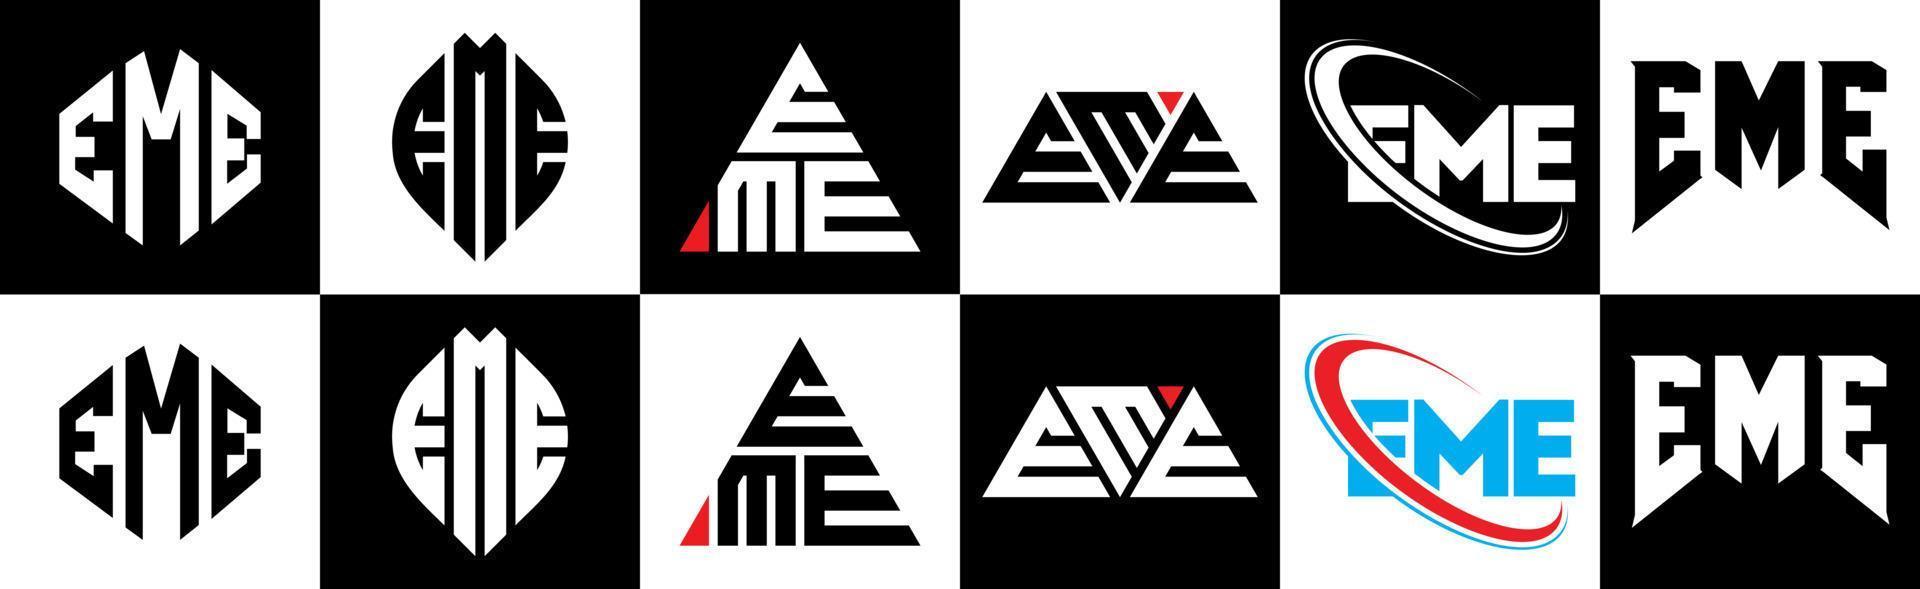 création de logo de lettre eme en six styles. eme polygone, cercle, triangle, hexagone, style plat et simple avec logo de lettre de variation de couleur noir et blanc dans un plan de travail. eme logo minimaliste et classique vecteur